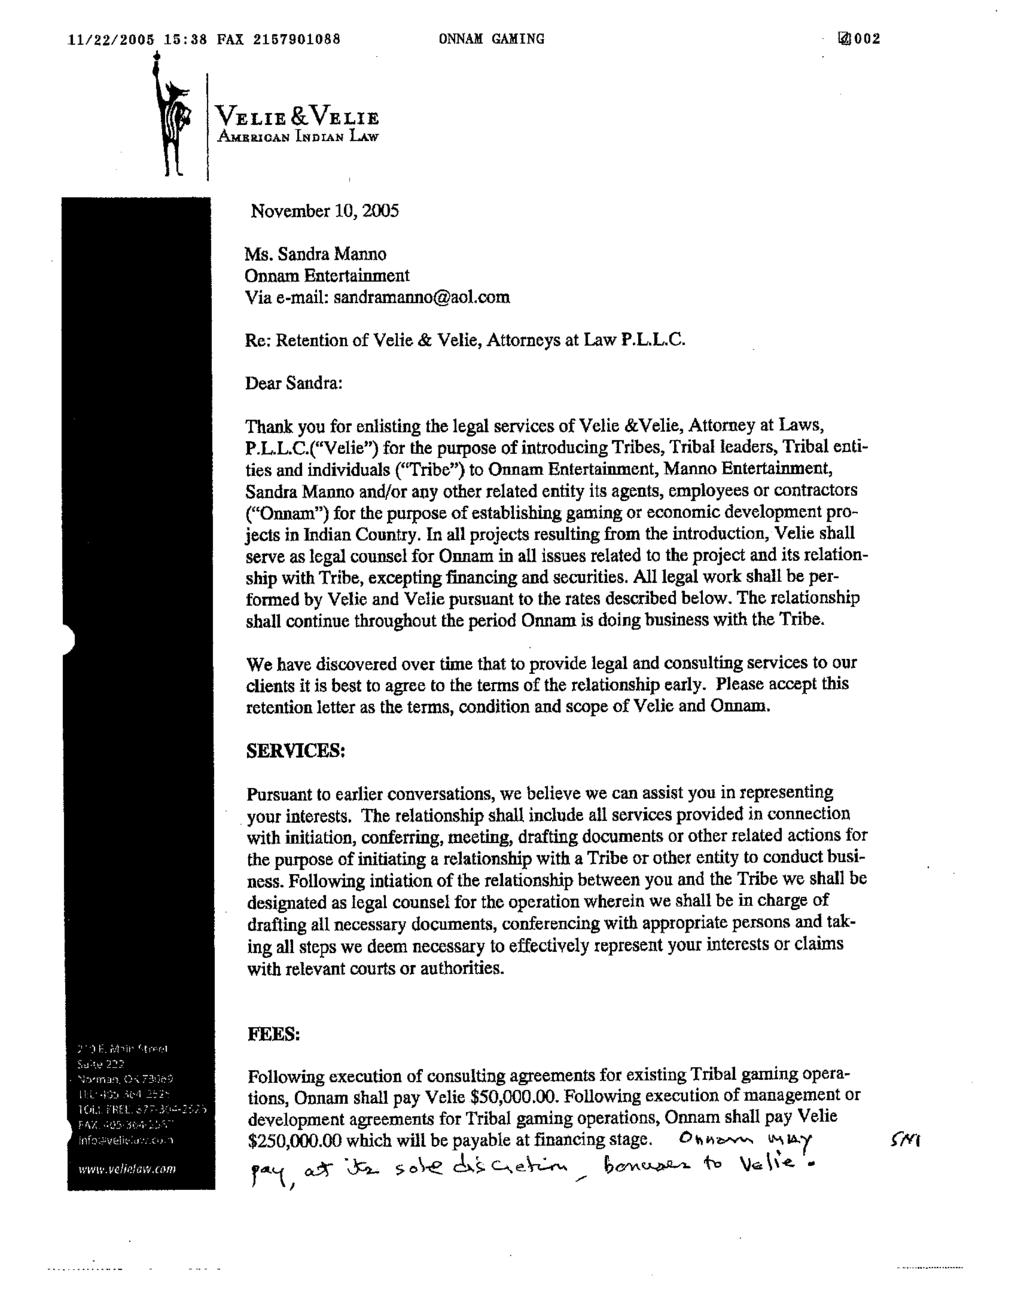 Case 5:07-cv-00514-C Document